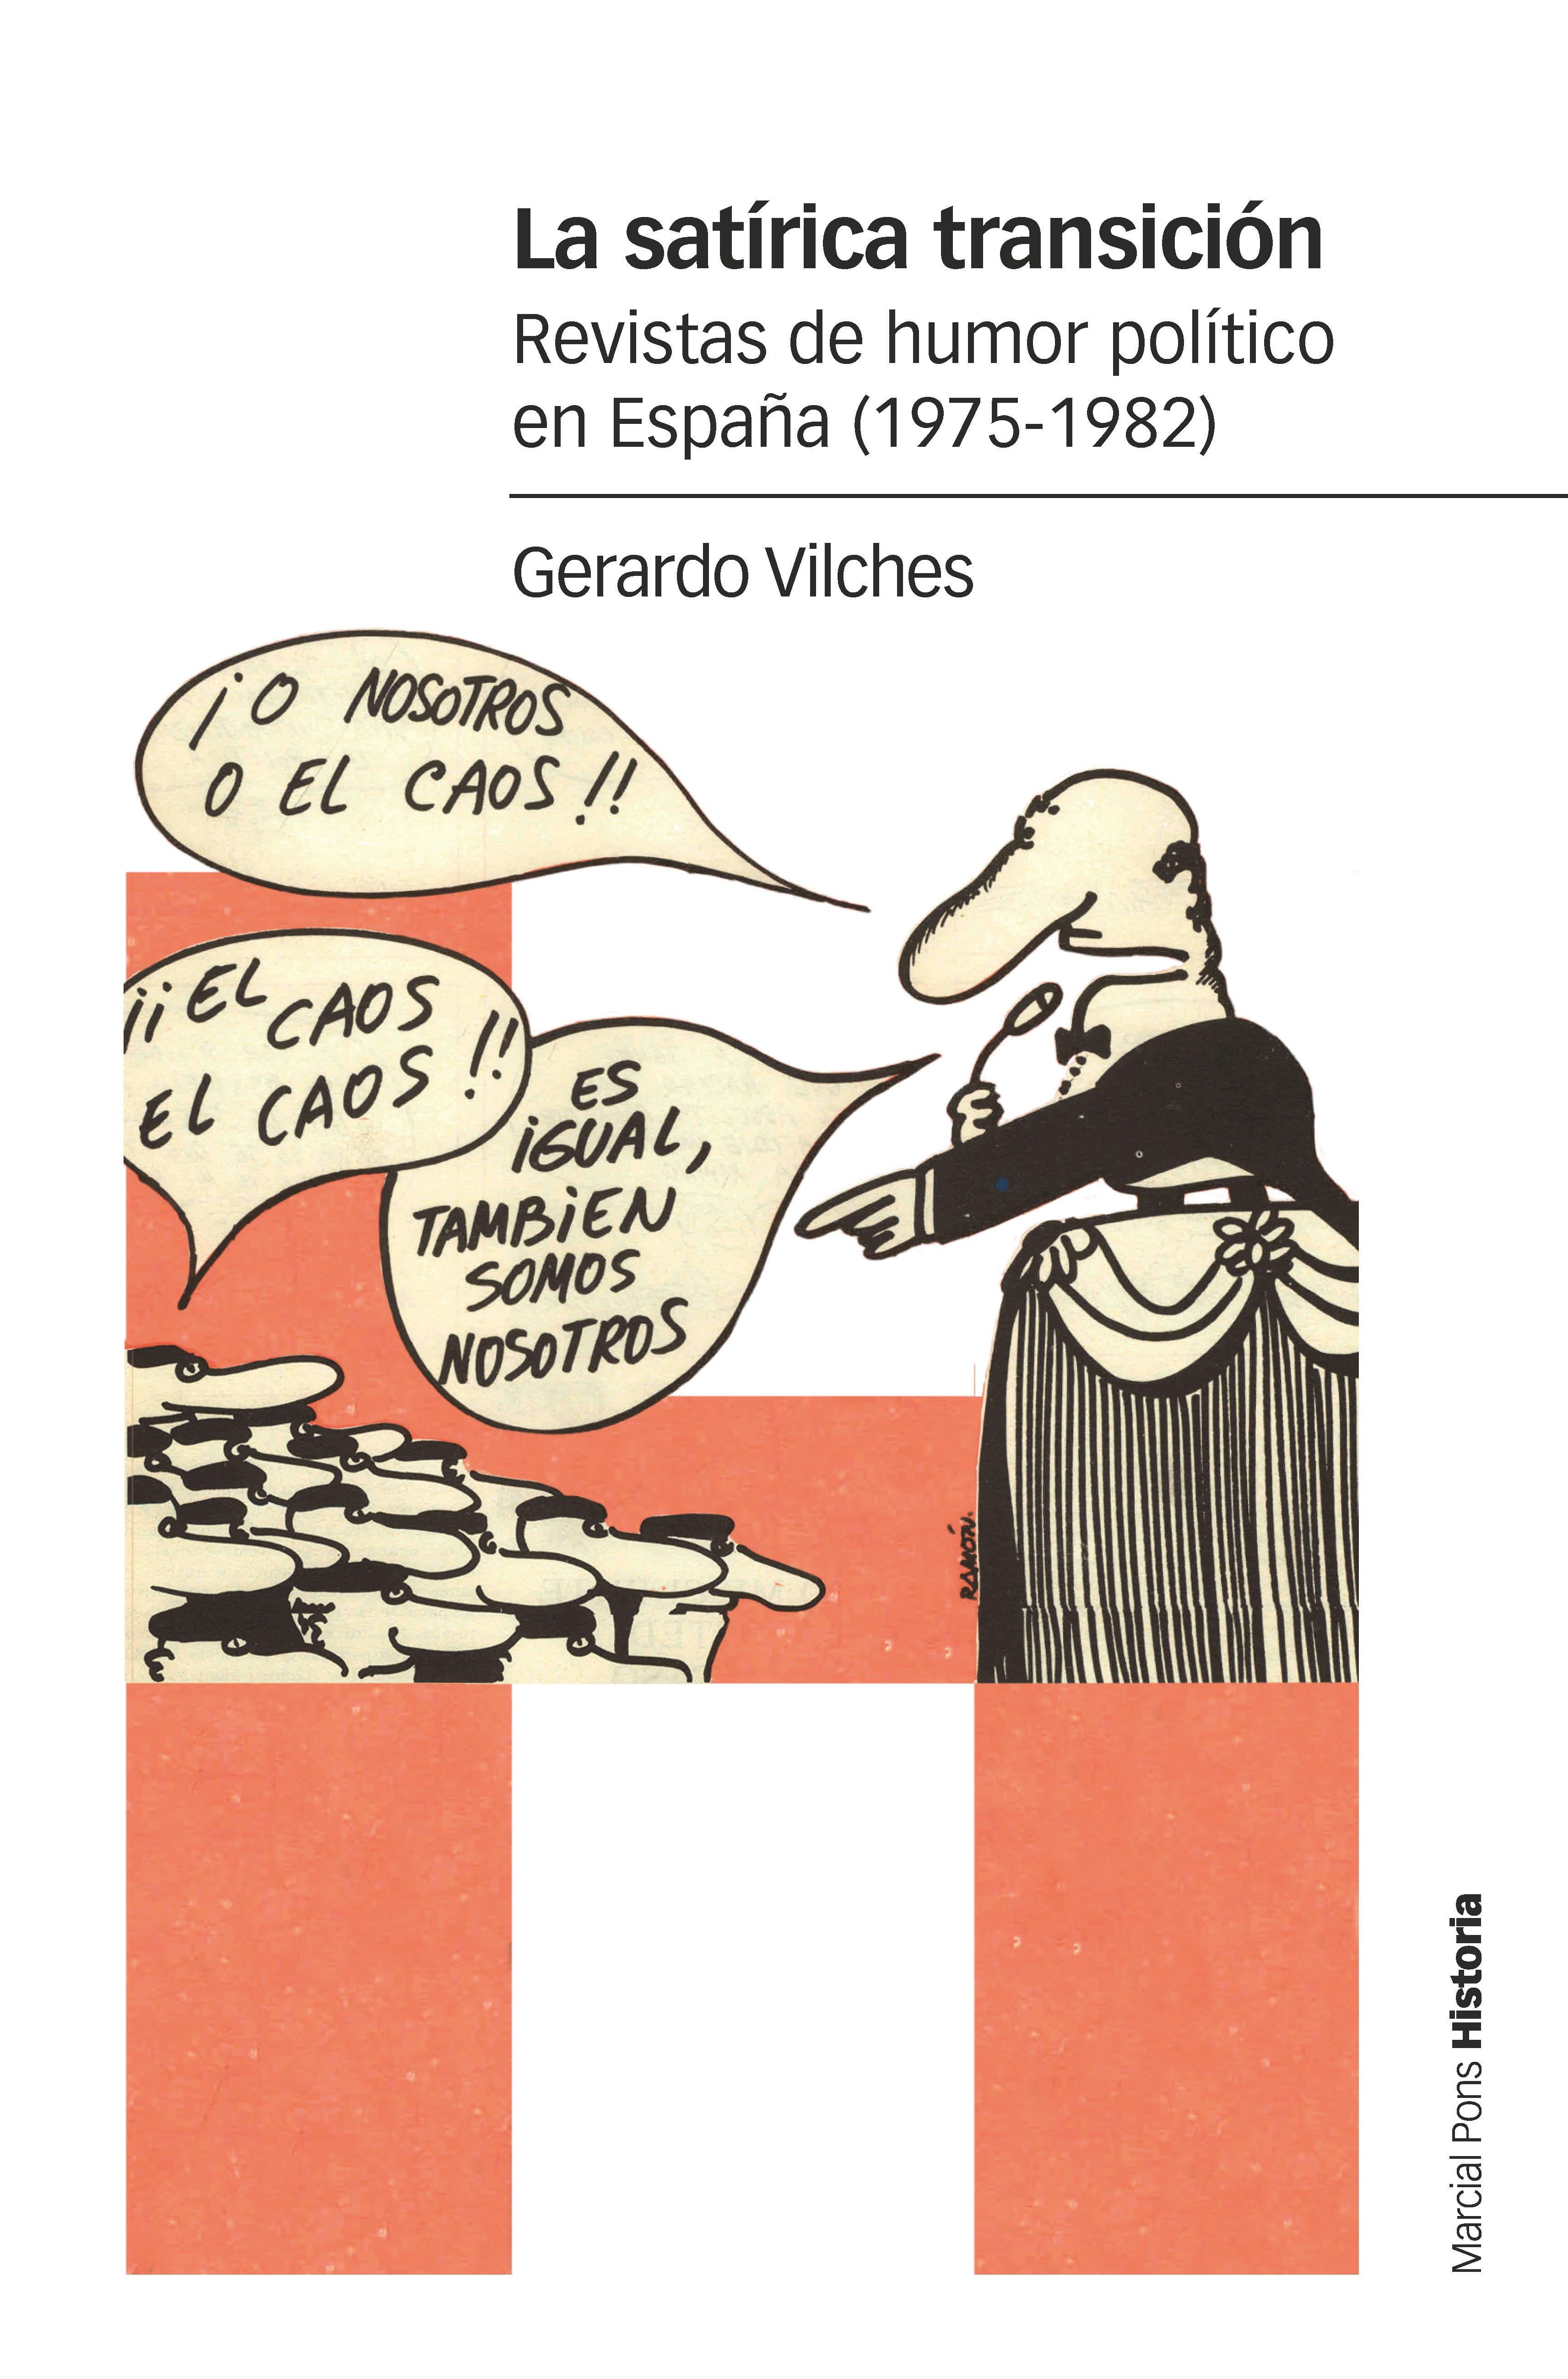 La satírica transición "Revistas de humor político en España (1975-1982)". 